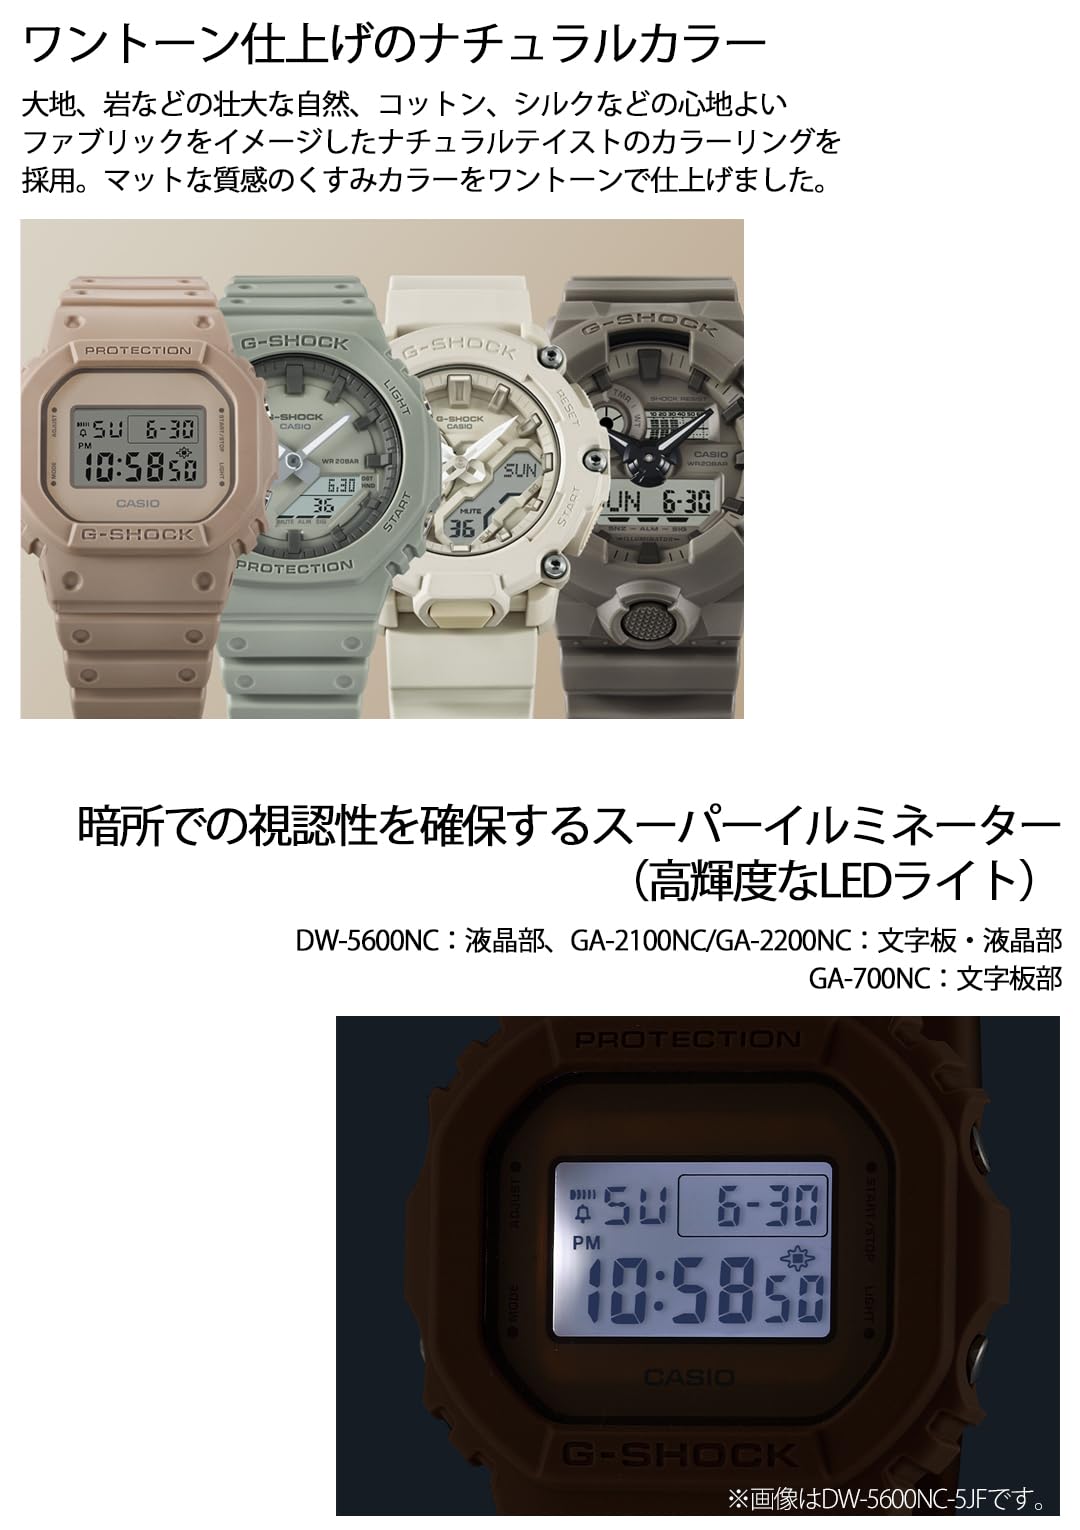 [カシオ] 腕時計 ジーショック 【国内正規品】 Natural colorシリーズ GA-2100NC-3AJF メンズ カーキー - BanzaiHobby